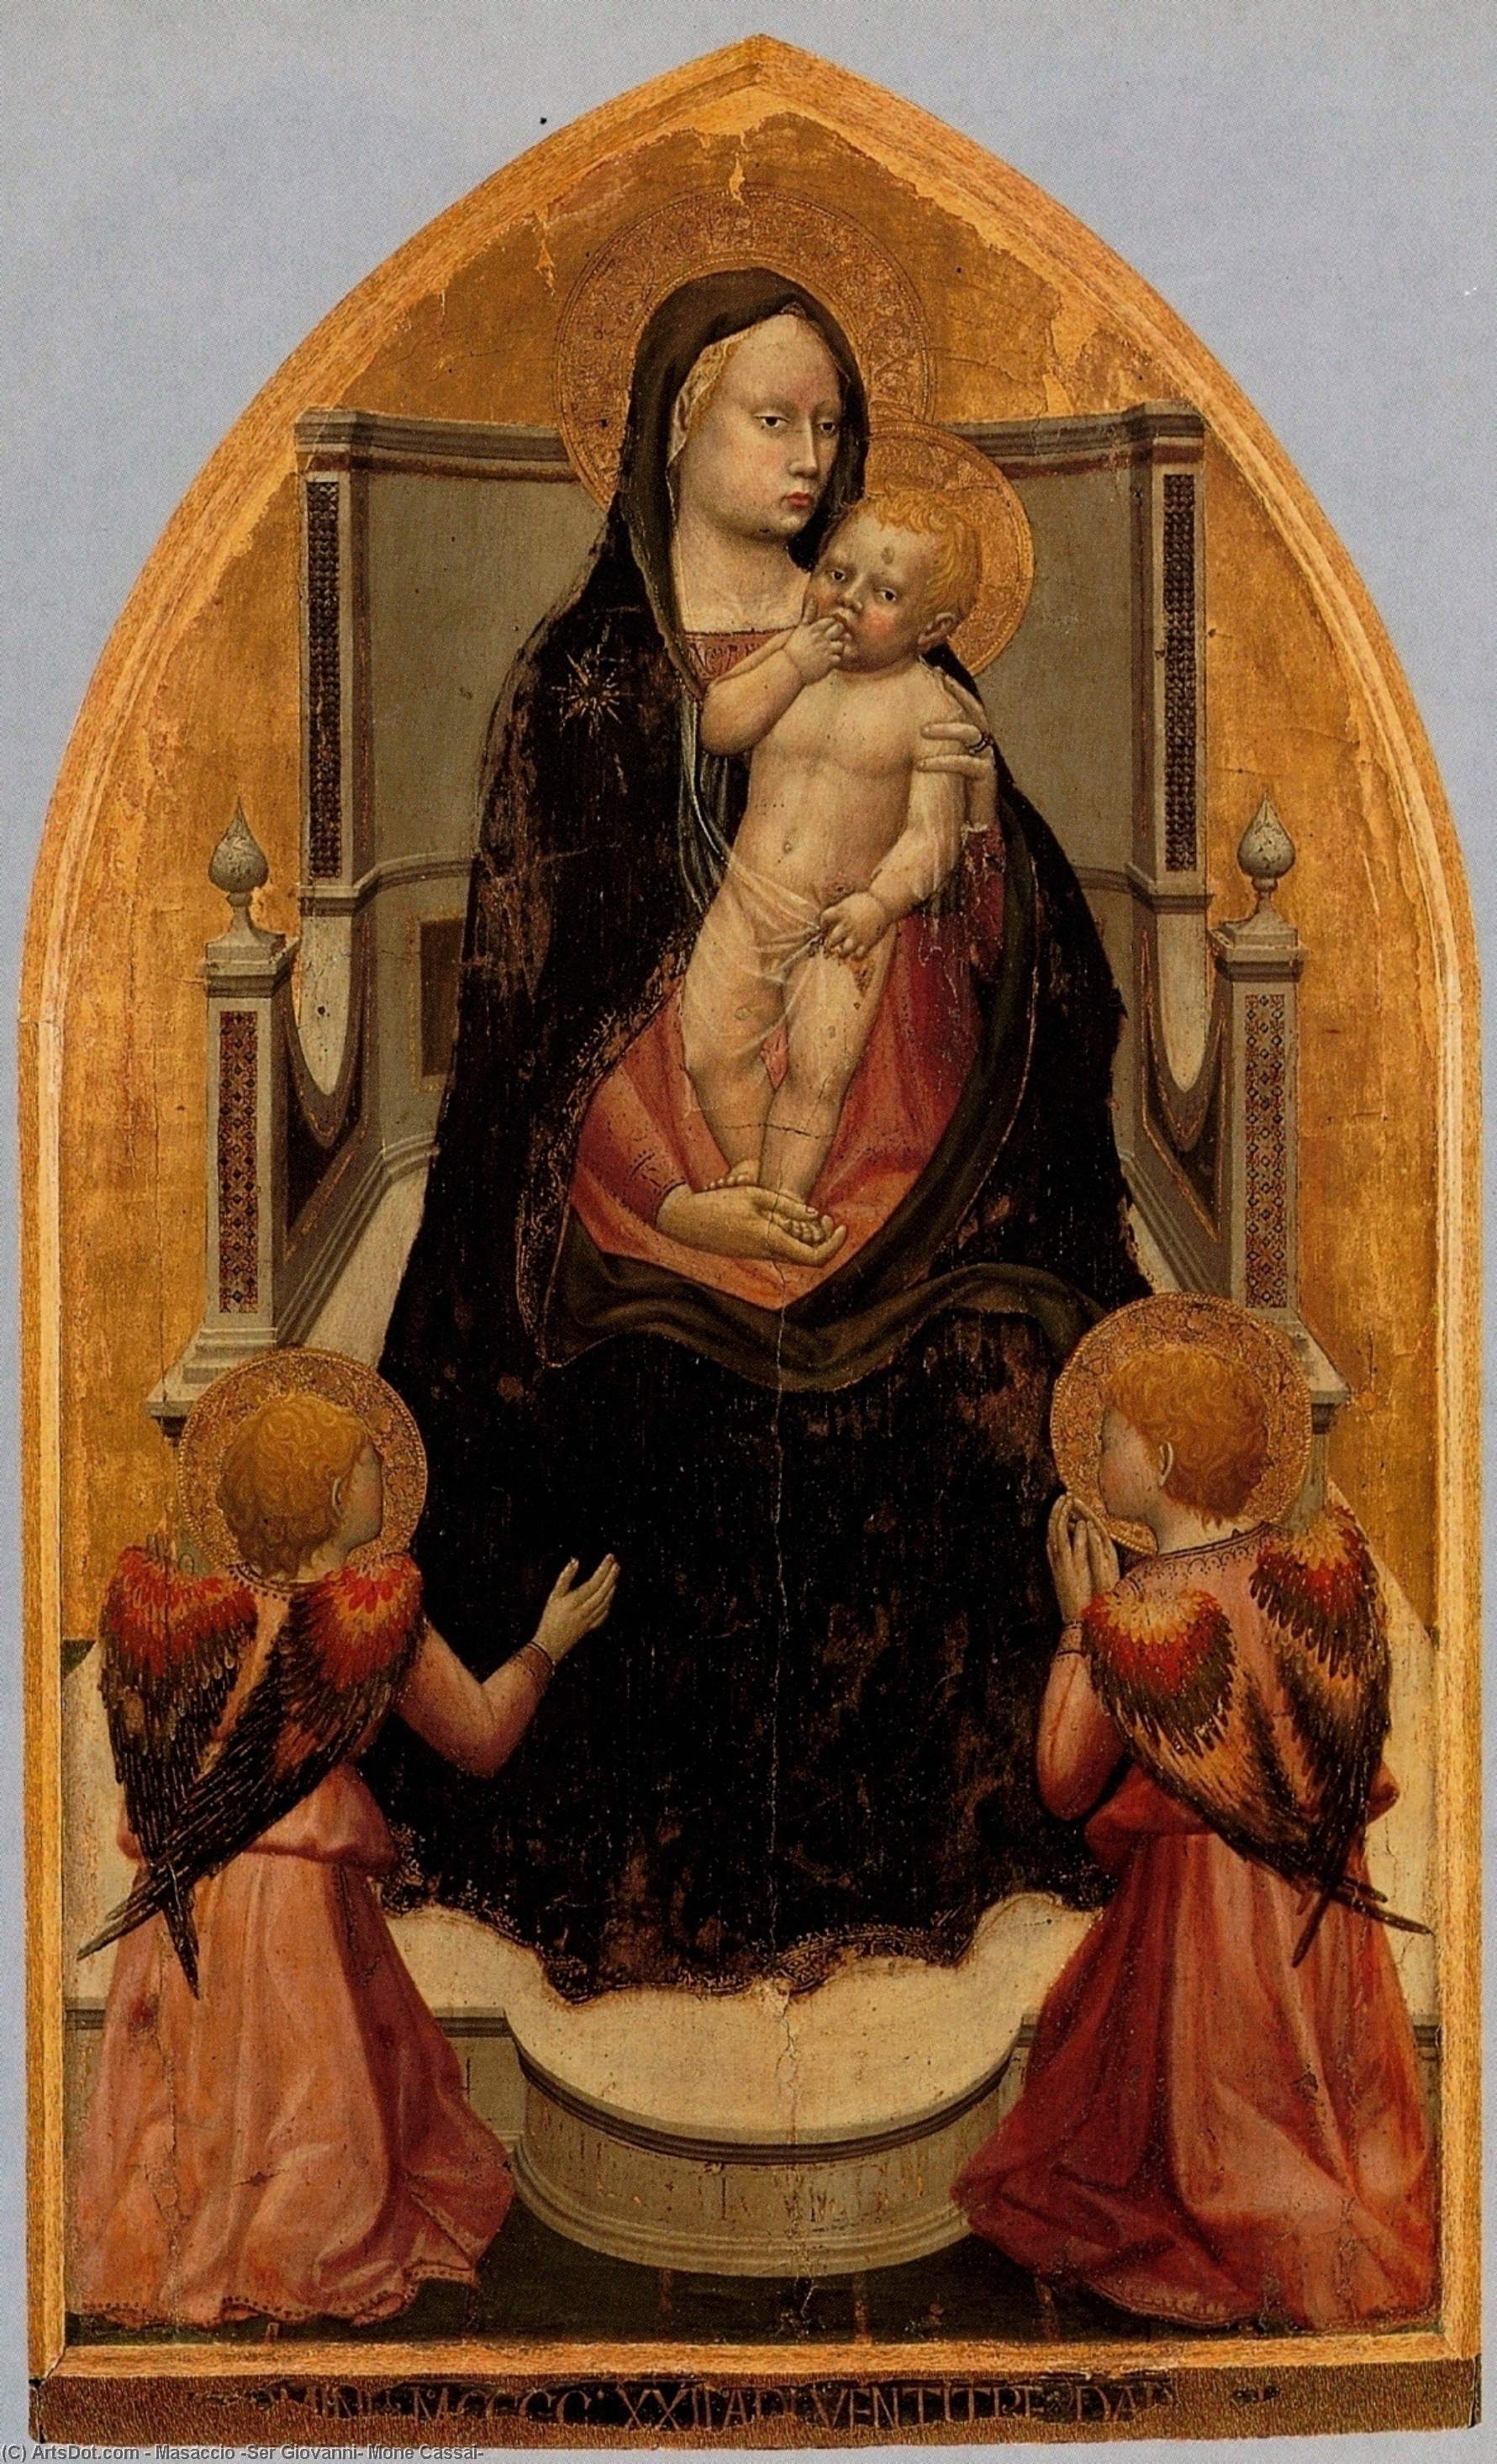 WikiOO.org - Encyclopedia of Fine Arts - Maleri, Artwork Masaccio (Ser Giovanni, Mone Cassai) - San Giovenale Triptych. Central panel